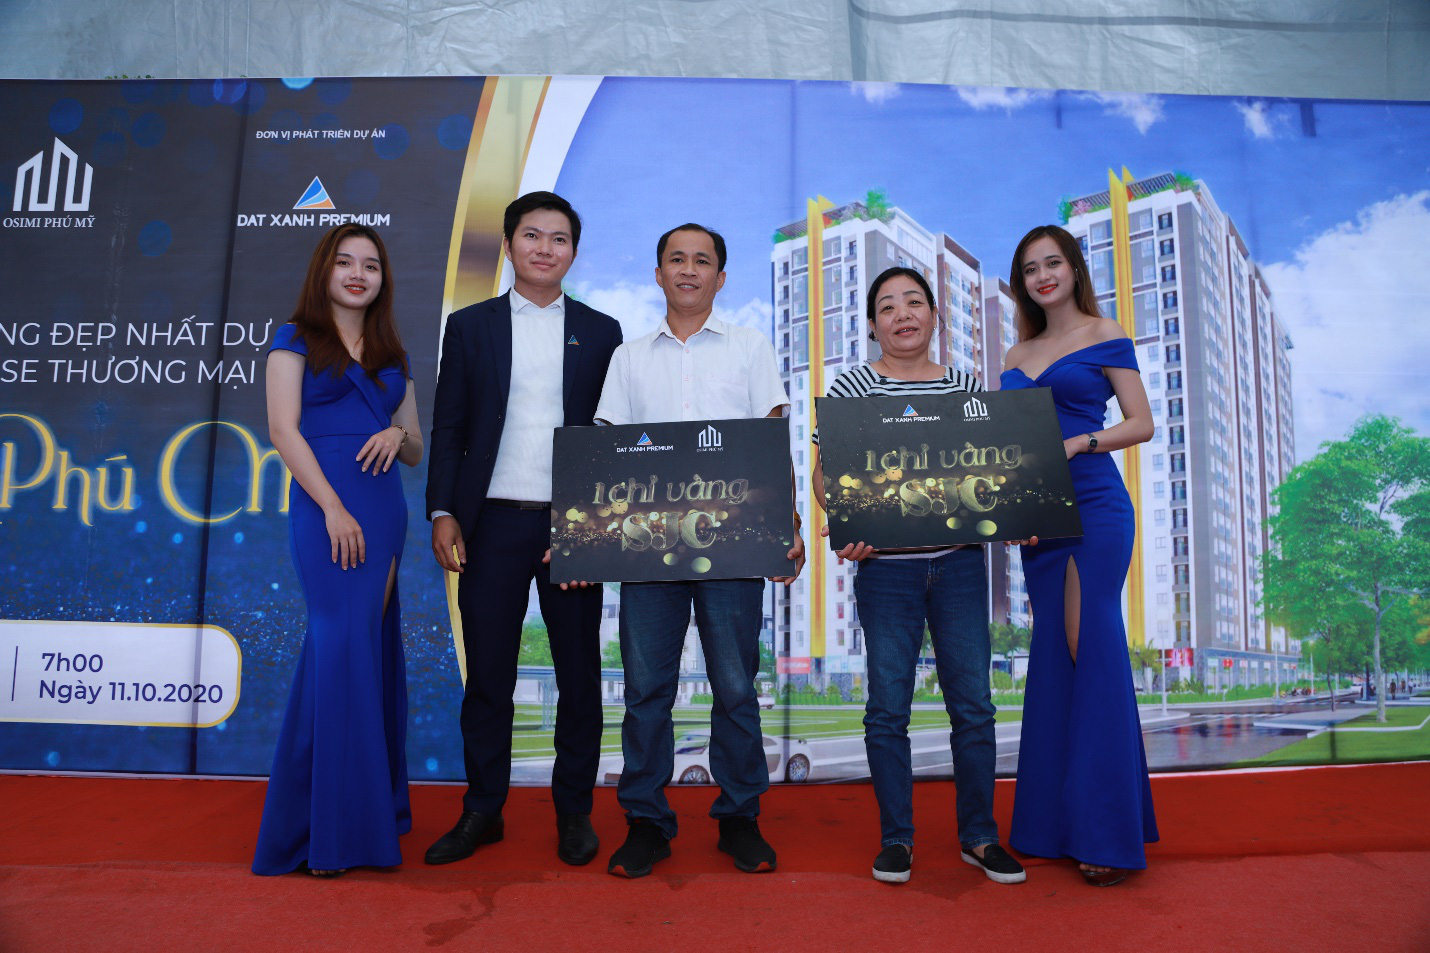 Đất Xanh Premium công bố thành công Dự án Osimi Phú Mỹ - Ảnh 2.